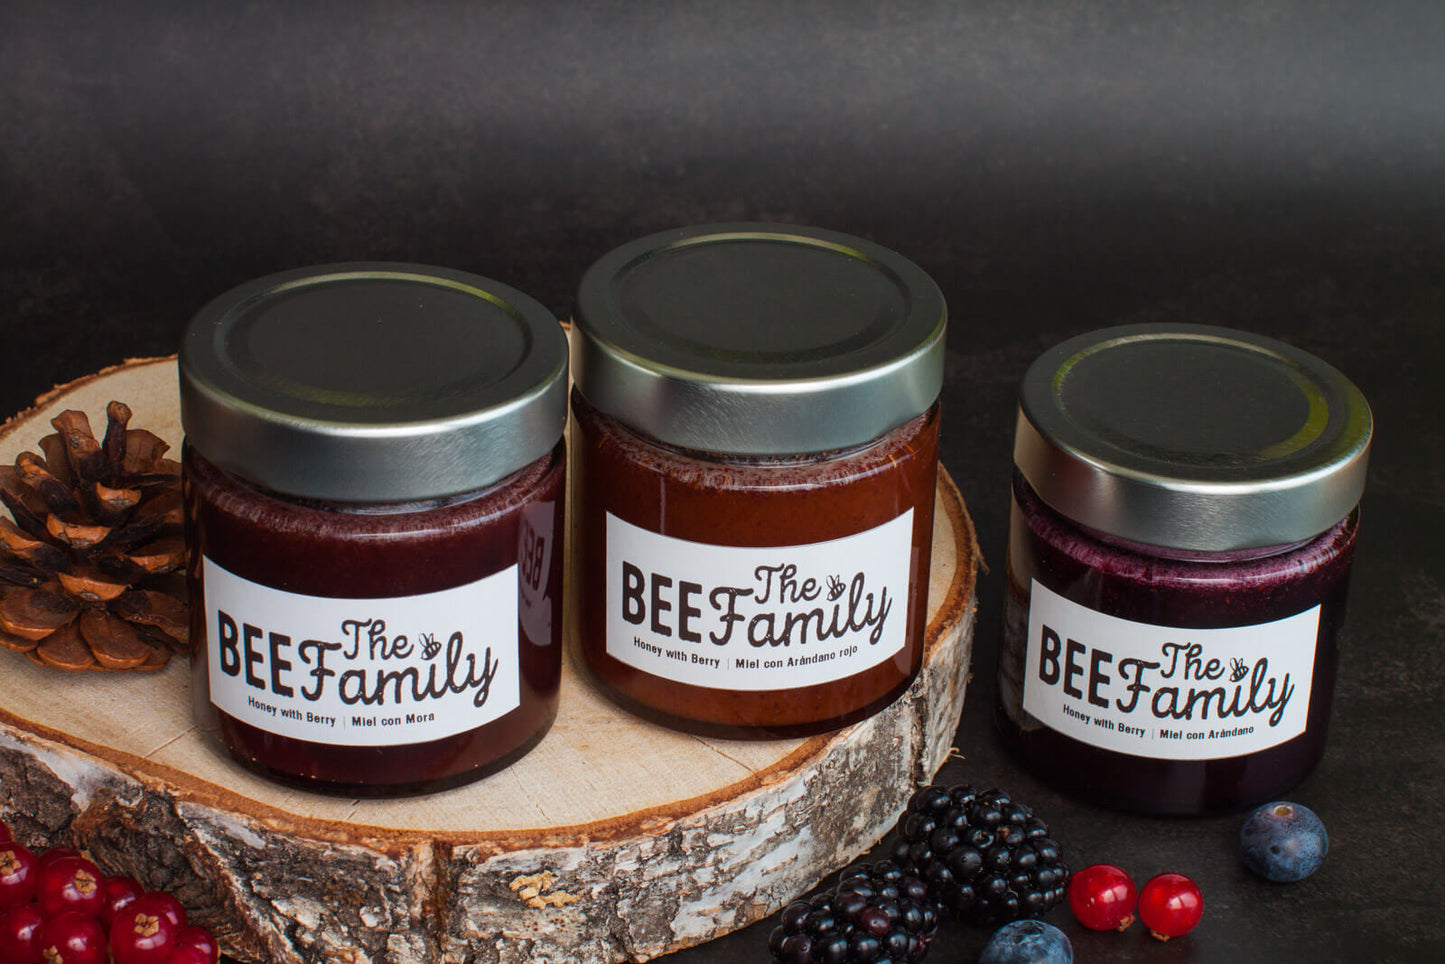 Limited Edition | Honey with Berry |  Miel con frutos del Bosque | Pack degustación de 3 sabores en tarro